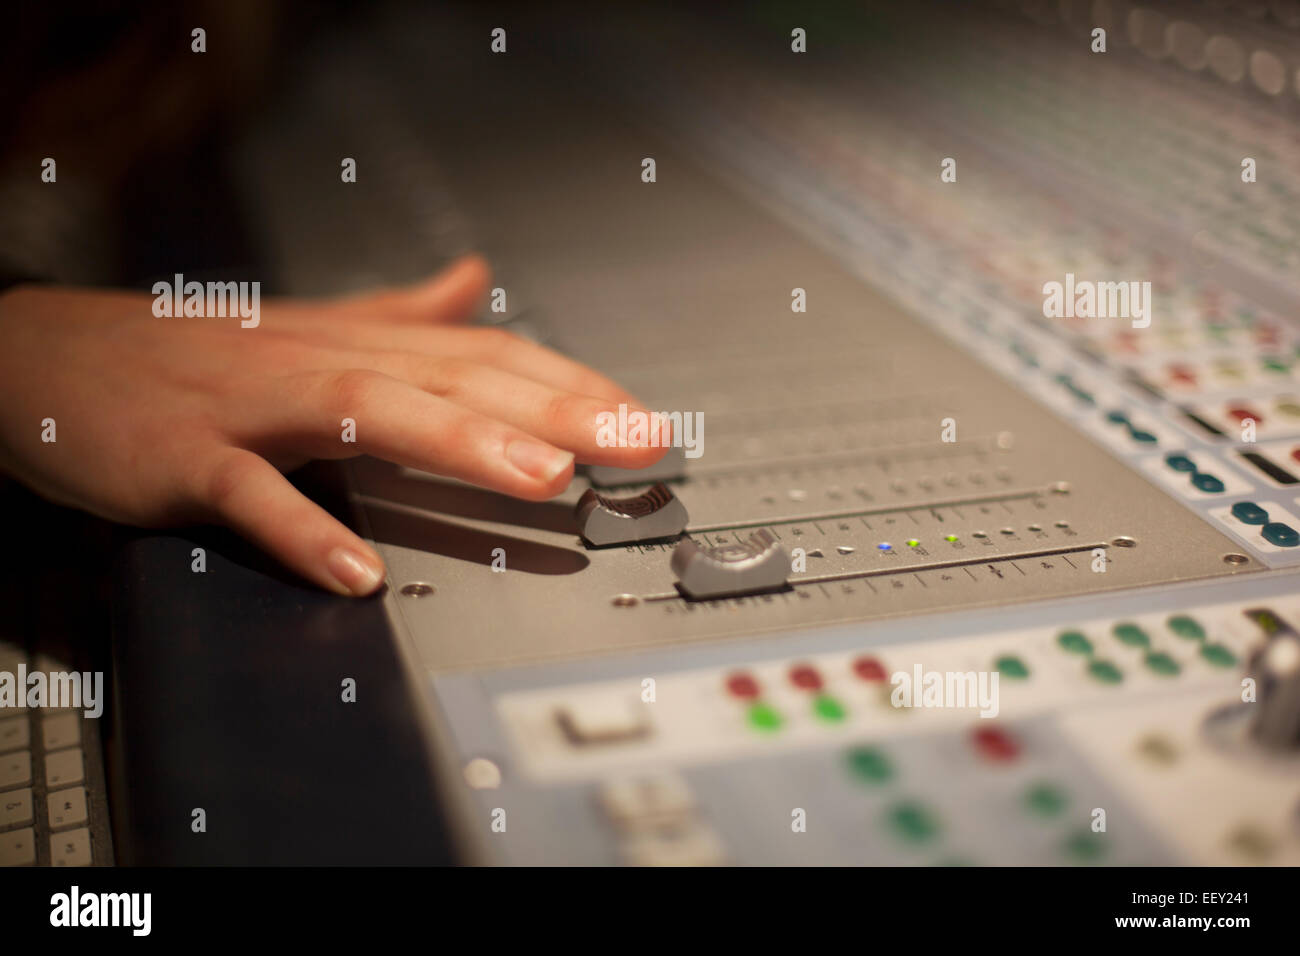 Recording studio mixing desk Stock Photo